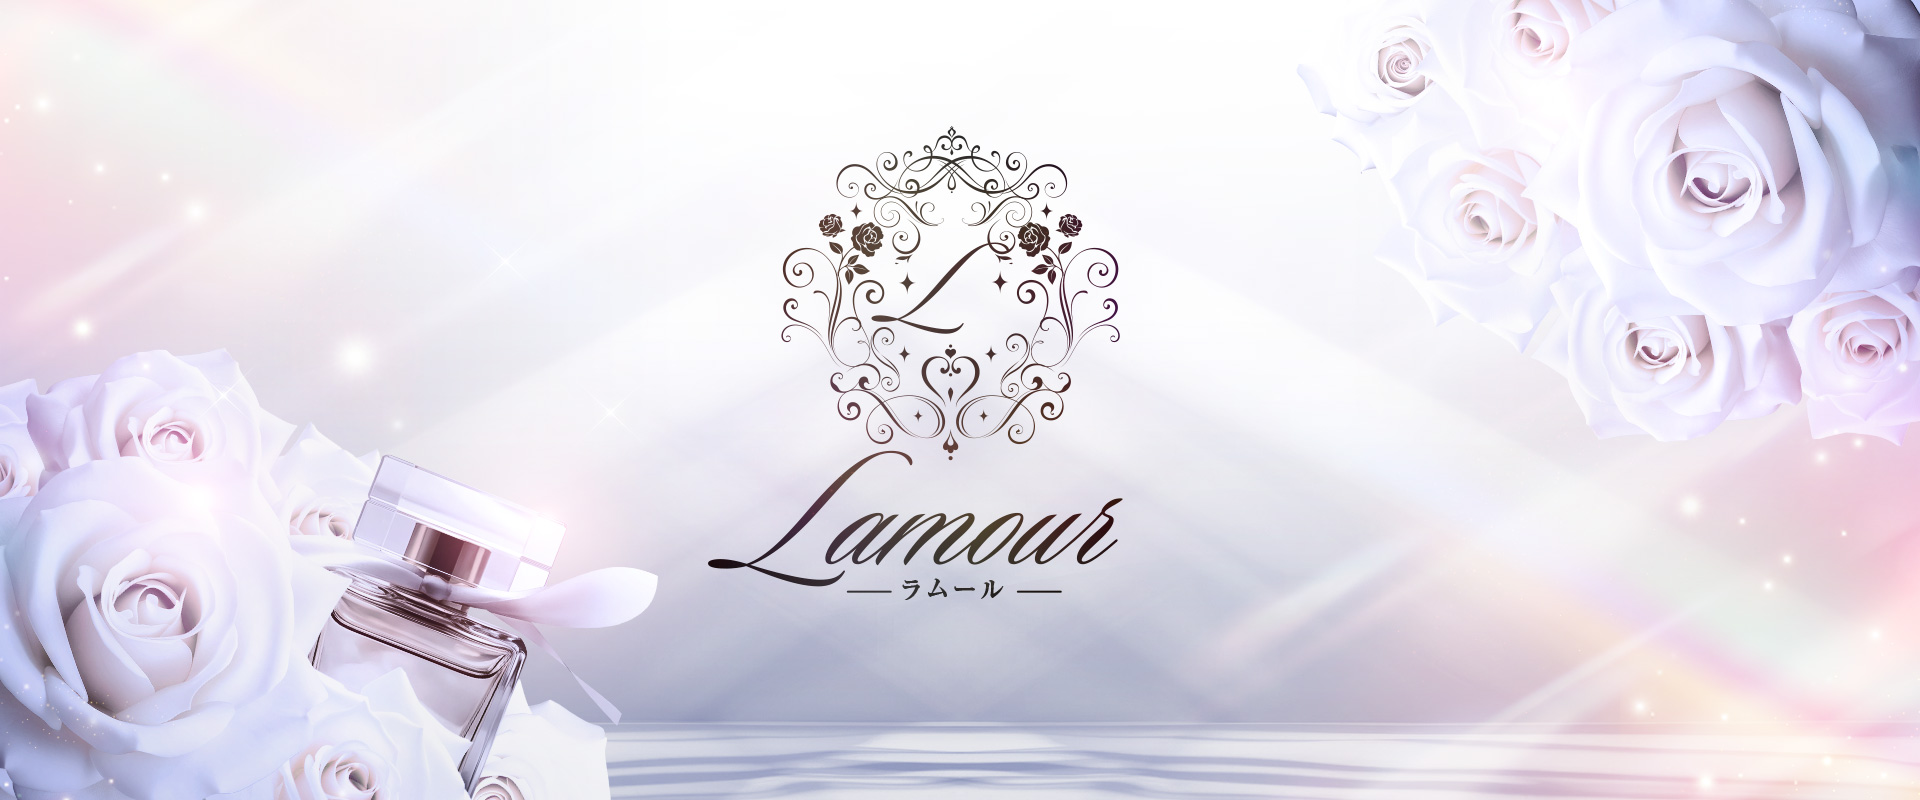 Lamour-ラムール-